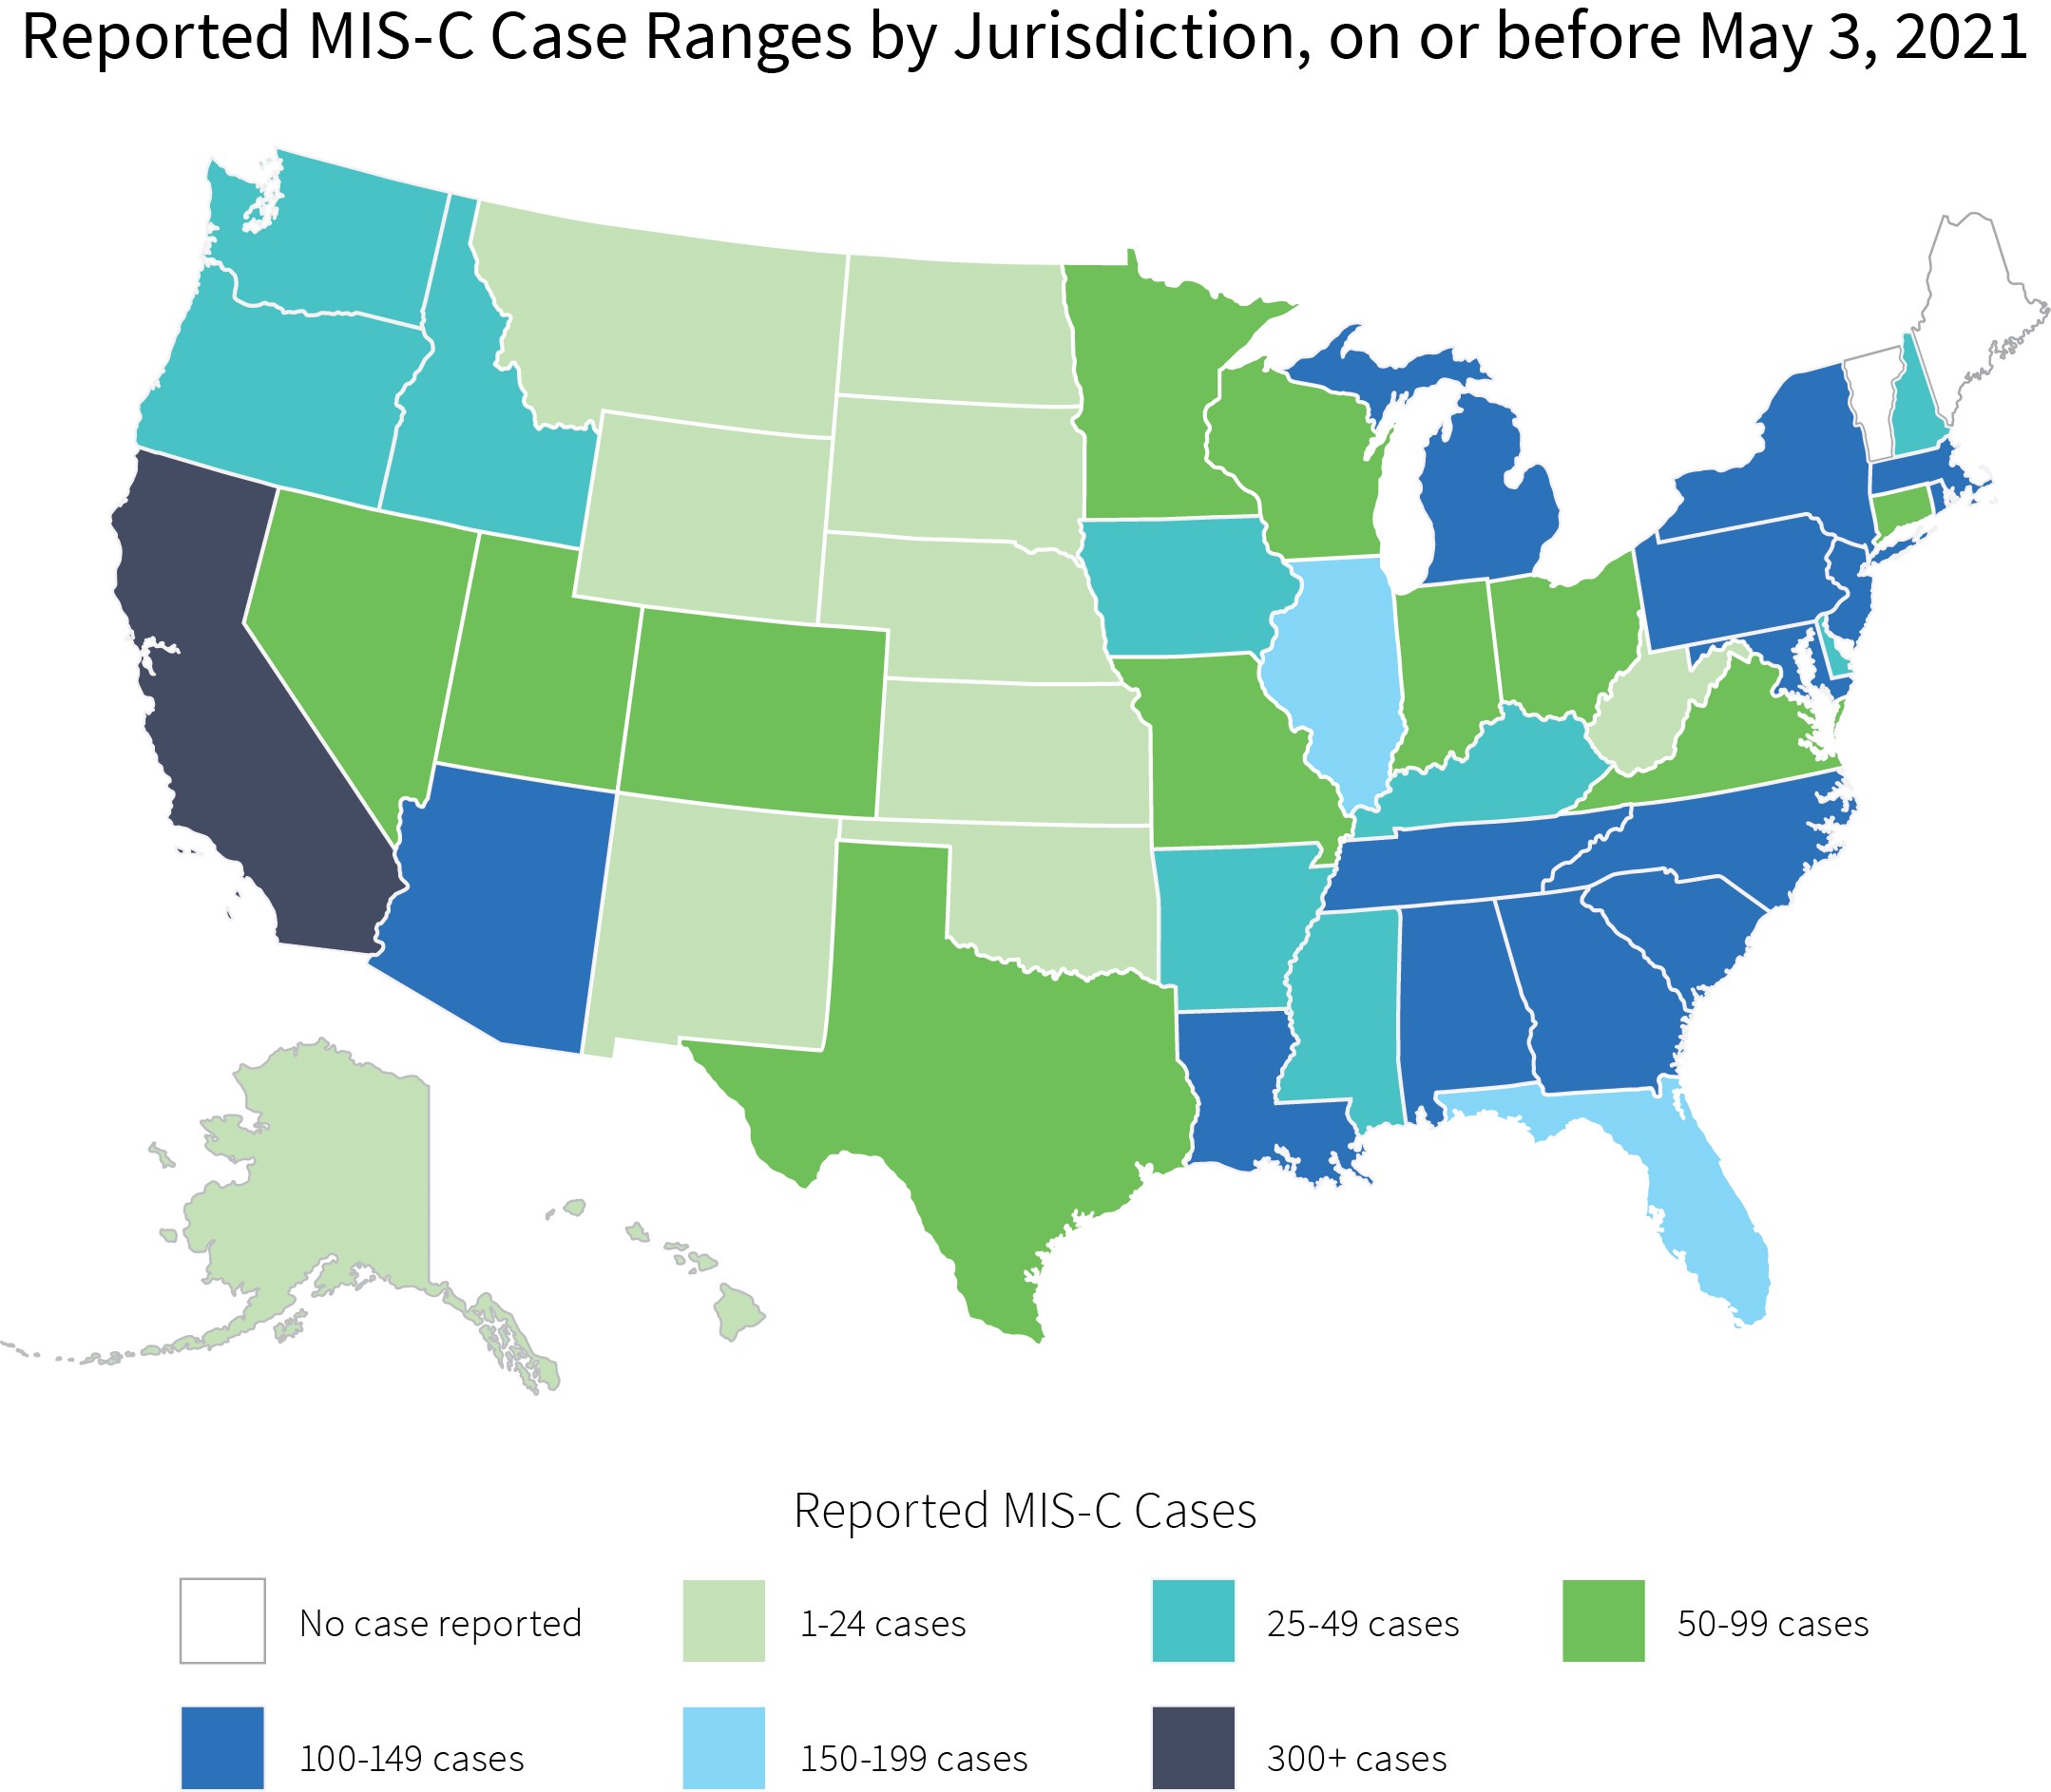 Reported MIS-C case ranges